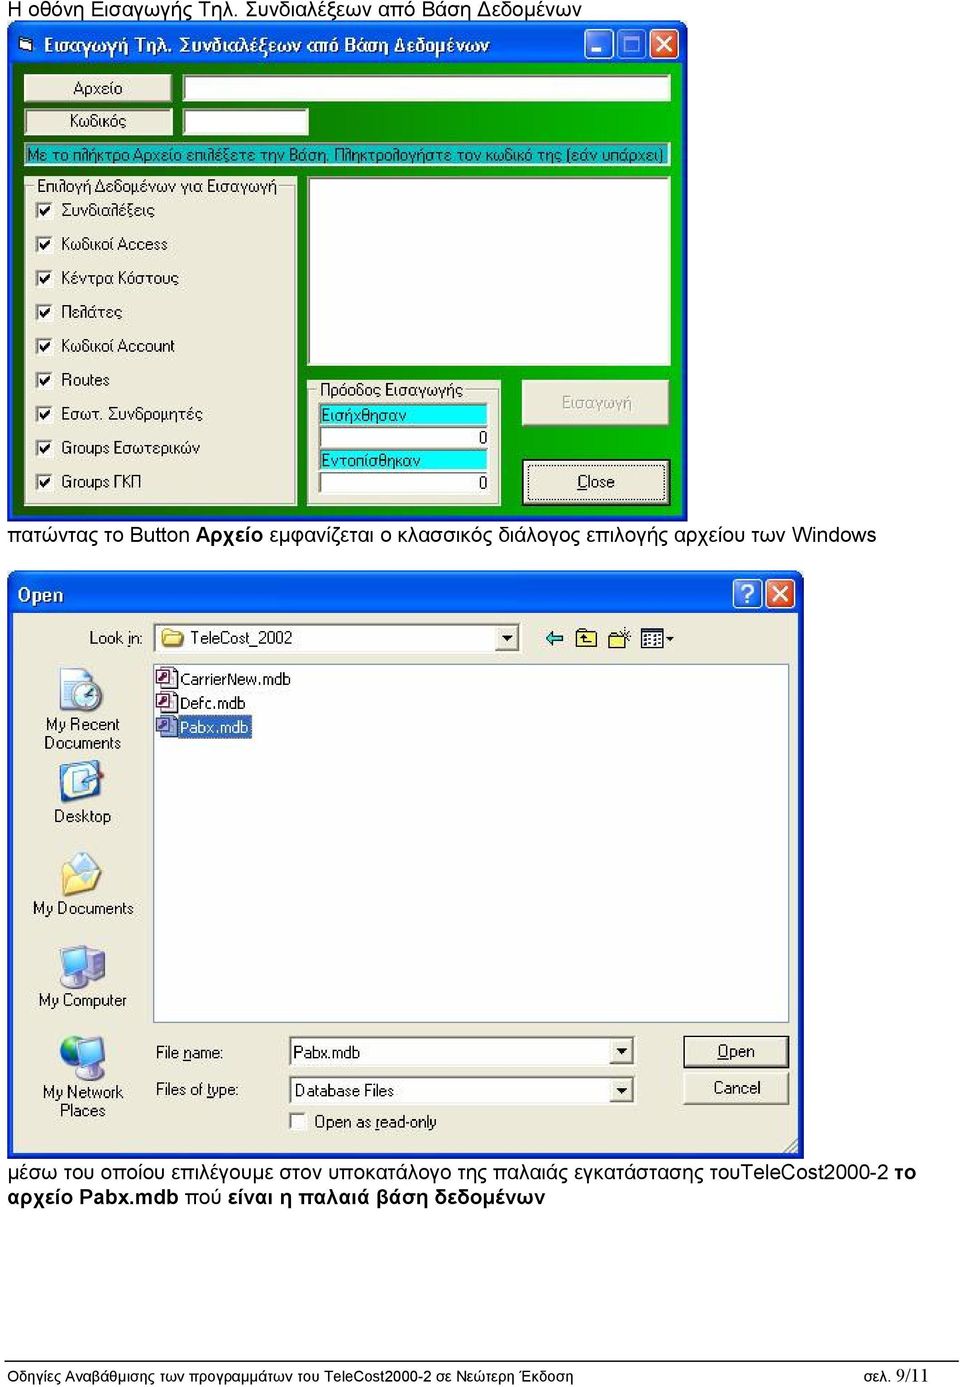 επιλογής αρχείου των Windows μέσω του οποίου επιλέγου με στον υ ποκατάλογο της παλαιάς